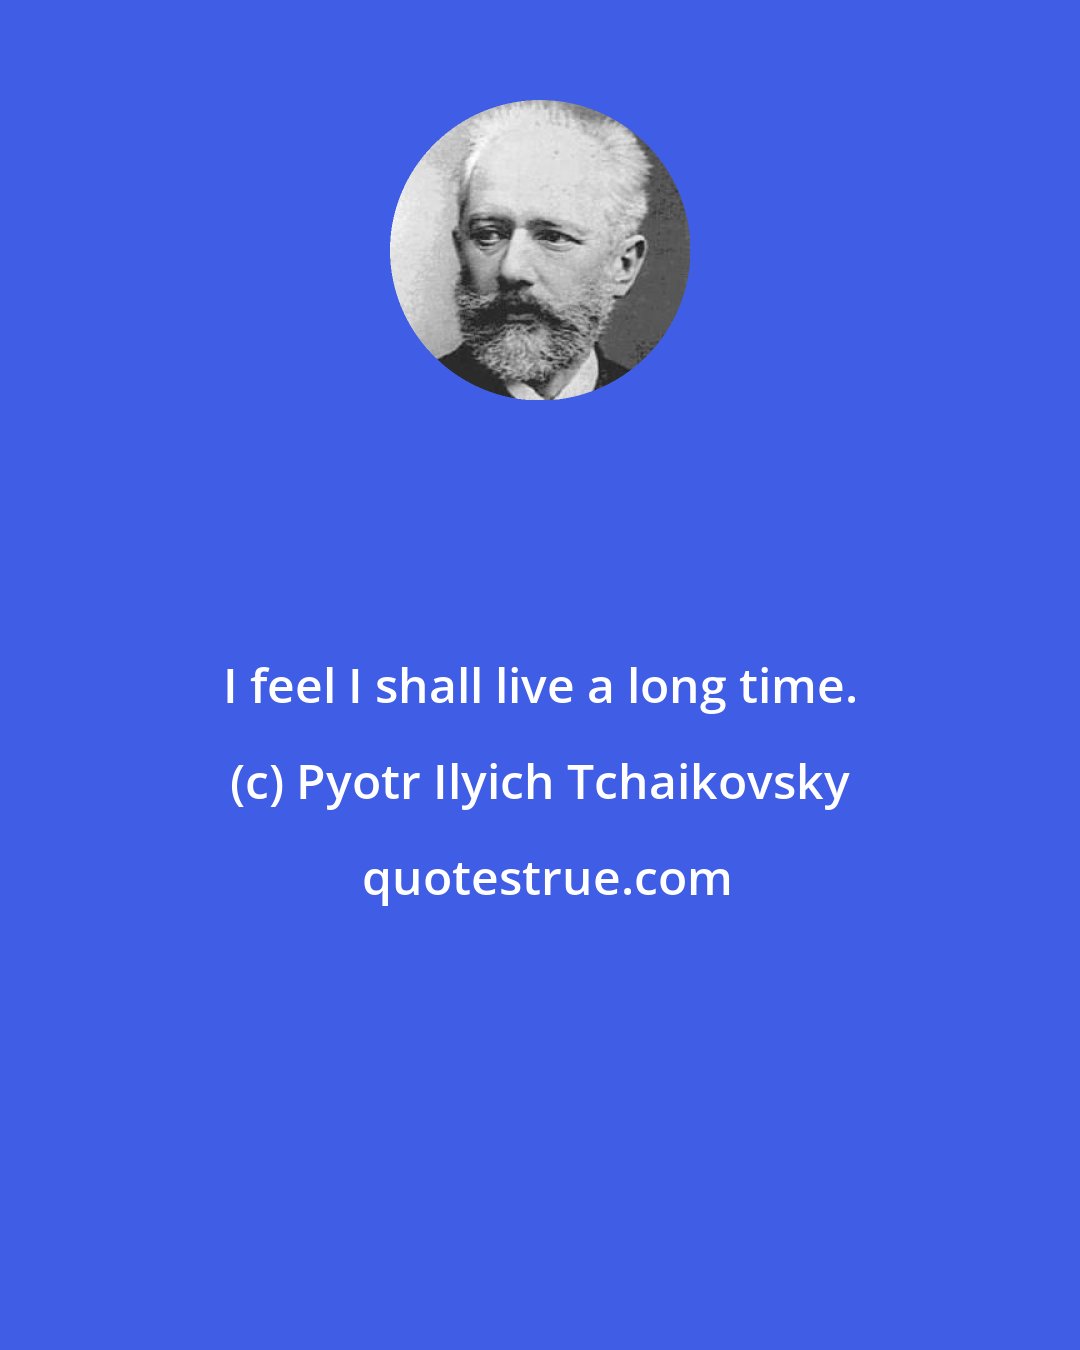 Pyotr Ilyich Tchaikovsky: I feel I shall live a long time.